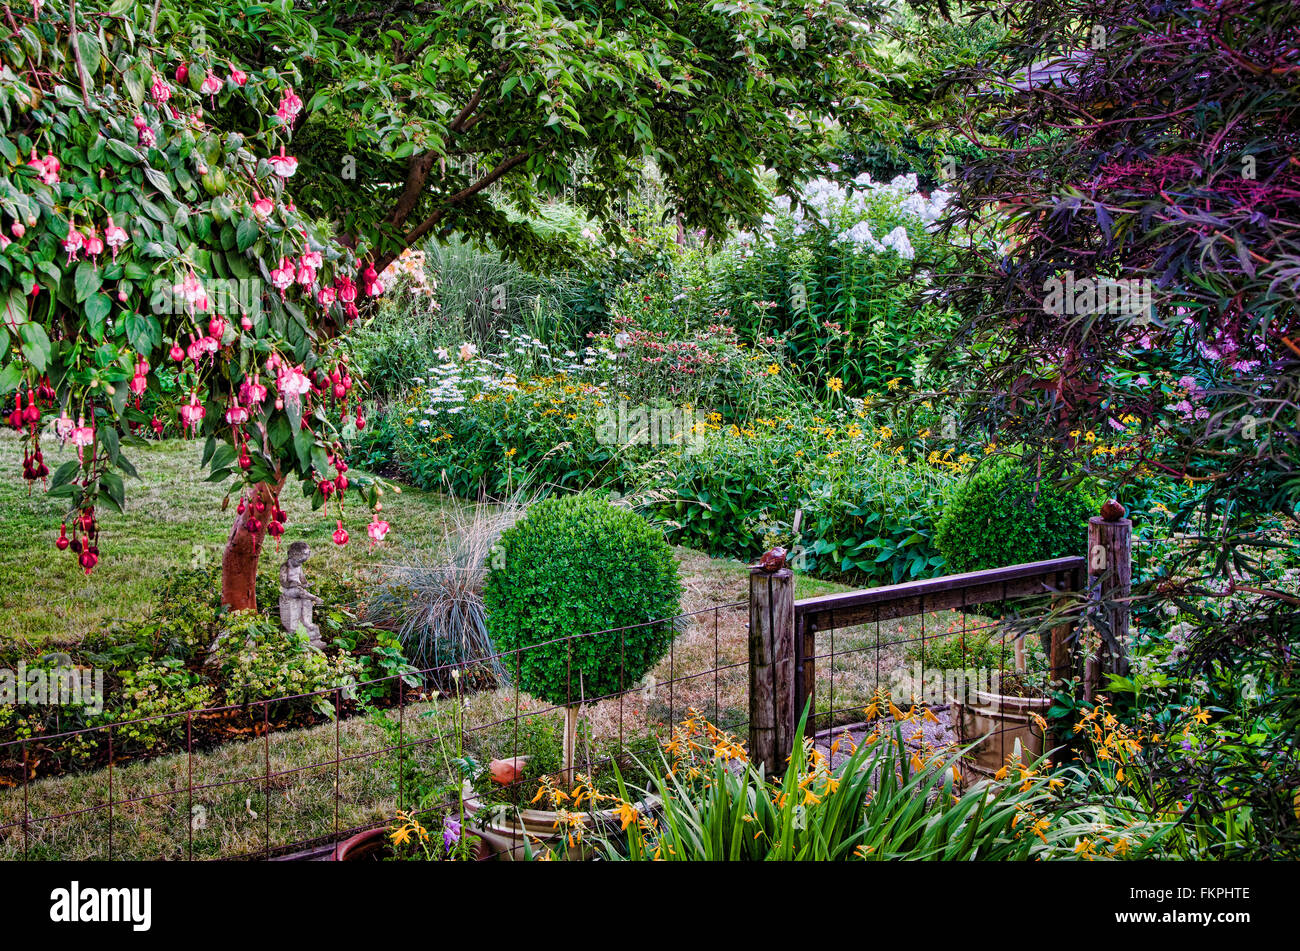 Un rústico portón flanqueado por dos mesas hedge arbustos conduce a un país tranquilo jardín hecho en un nostálgico estilo ilustrativo. Foto de stock